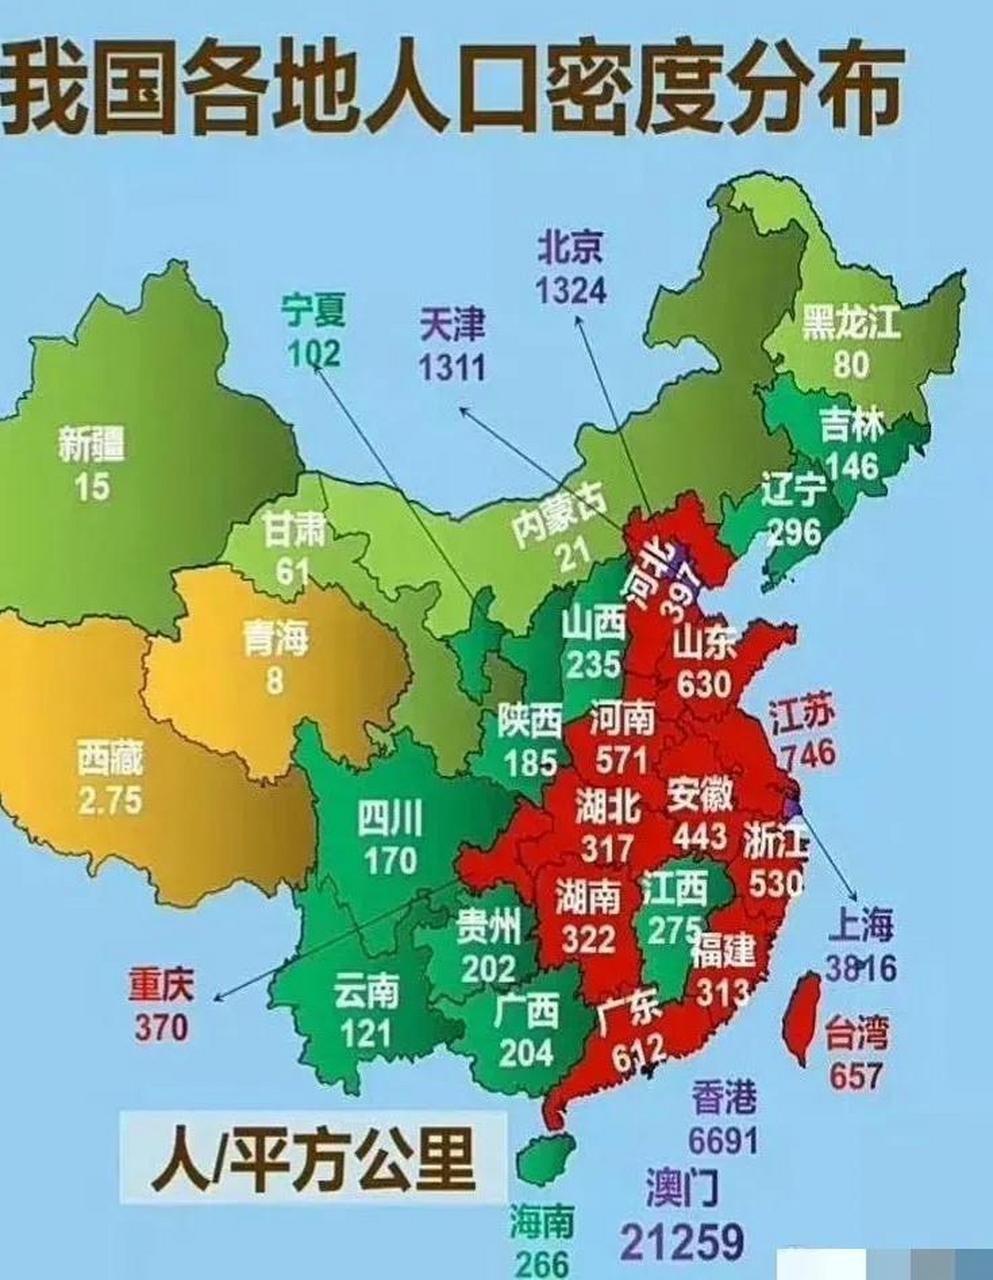 我国各地人口密度情况:重庆领先湖北,山东力压广东,澳门是高居第一